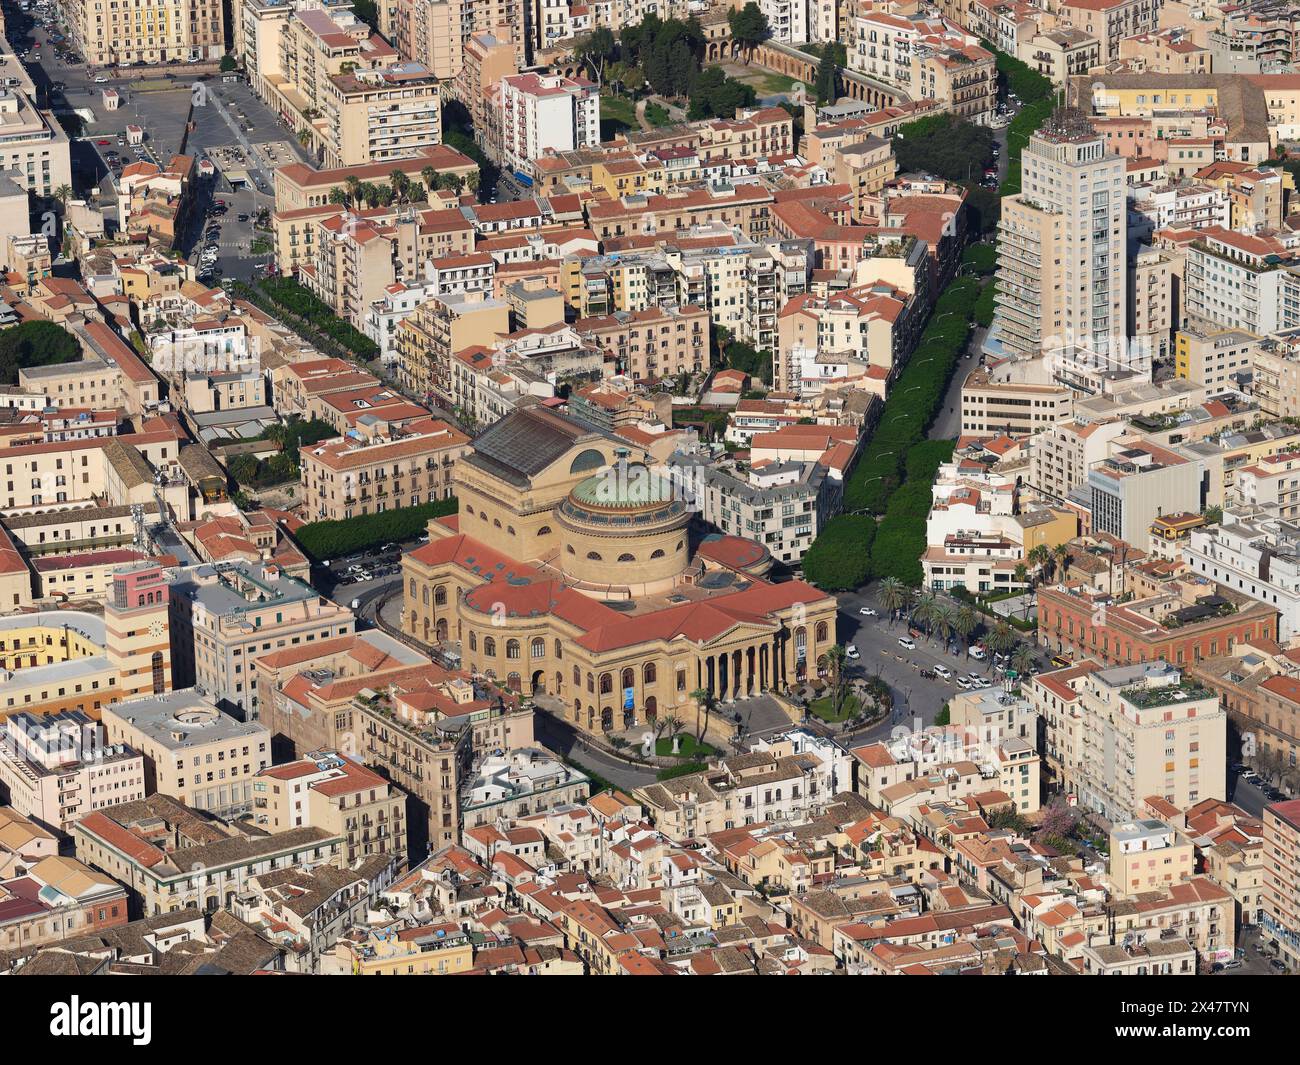 LUFTAUFNAHME. Die Kathedrale von Palermo, ein UNESCO-Weltkulturerbe. Provinz Palermo, Sizilien, Italien. Stockfoto